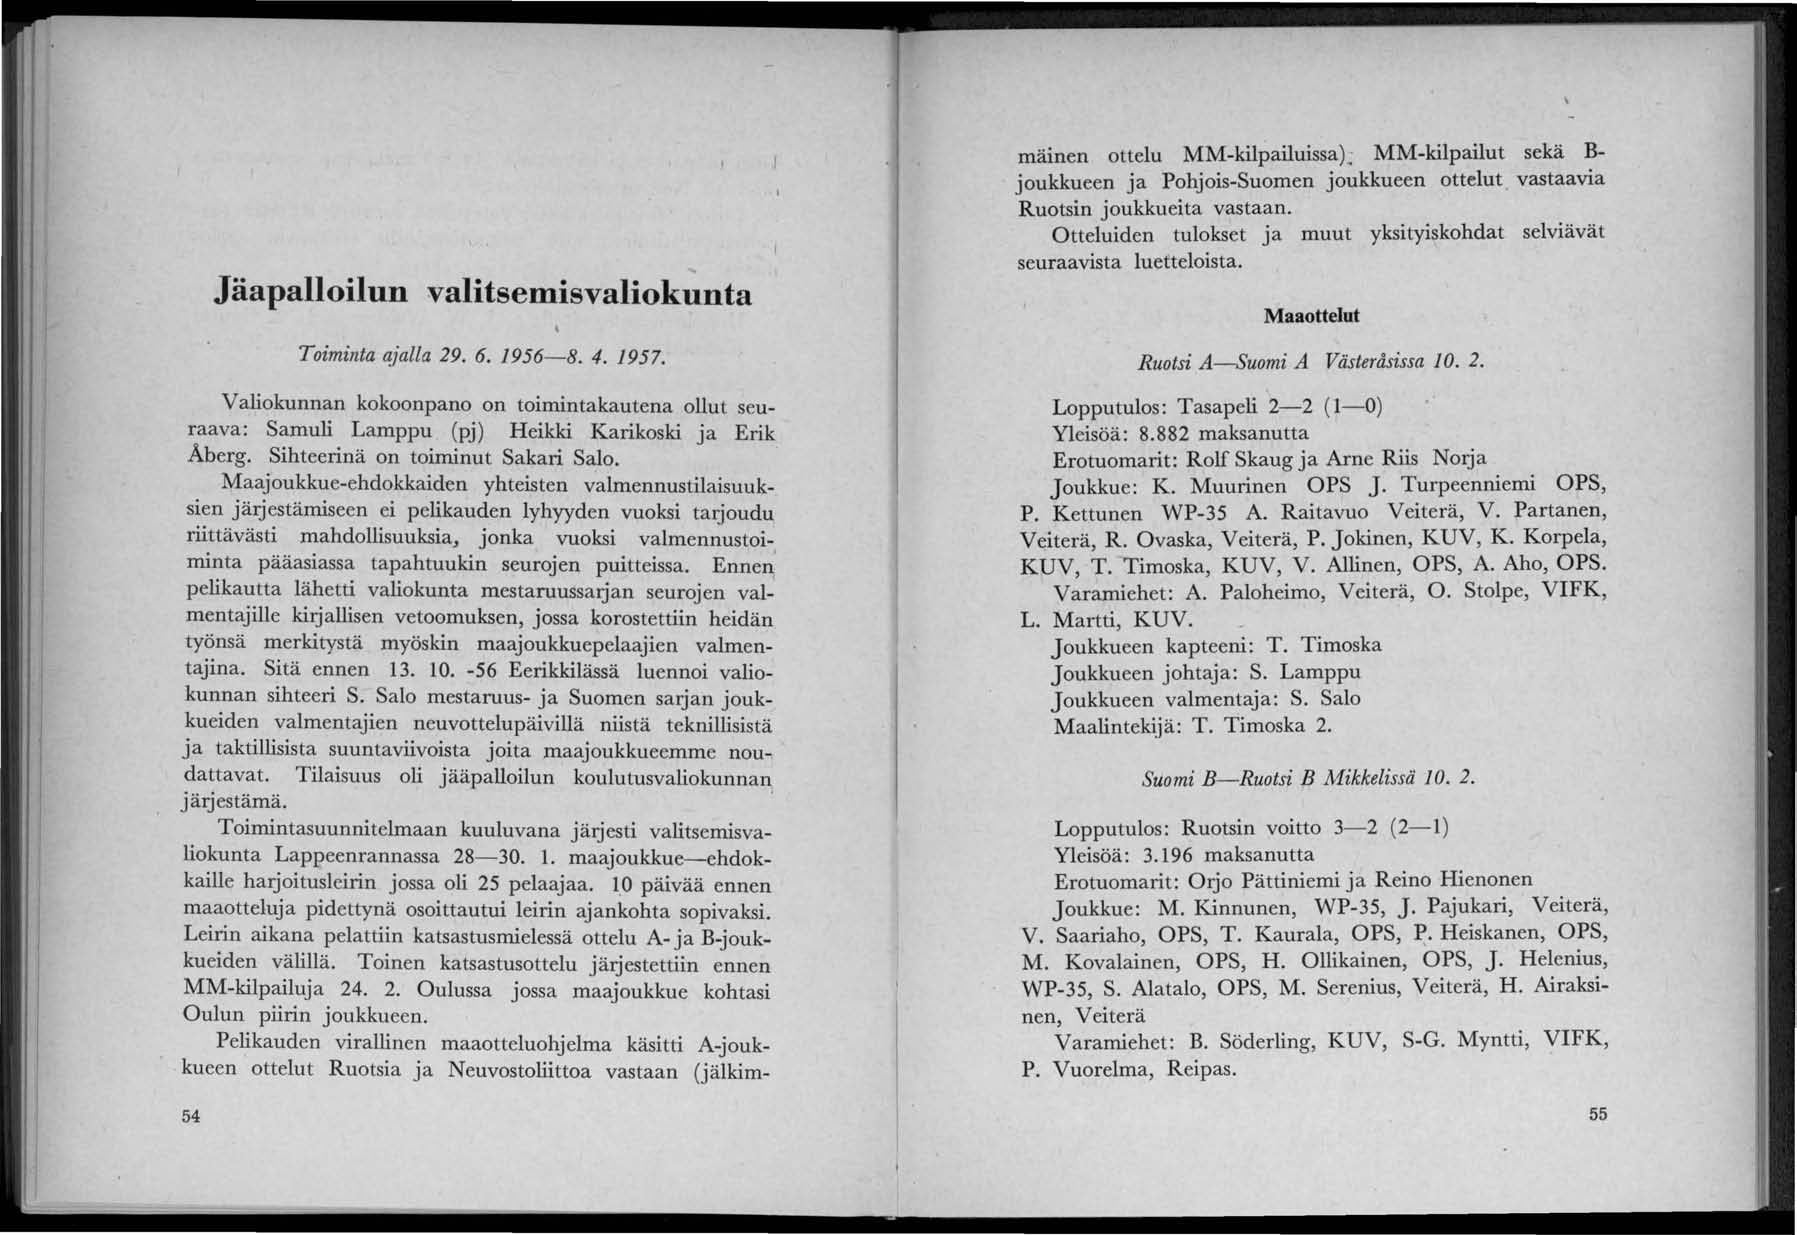 Jäapalloilun valitsemisvaliokunta Toiminta ajalla 29. 6. 1956-8. 4. 1957. Valiokunnan kokoonpano on toimintakautena ollut seuraava: Samuli Lamppu (pj) Heikki Karikoski ja Erik Aberg.